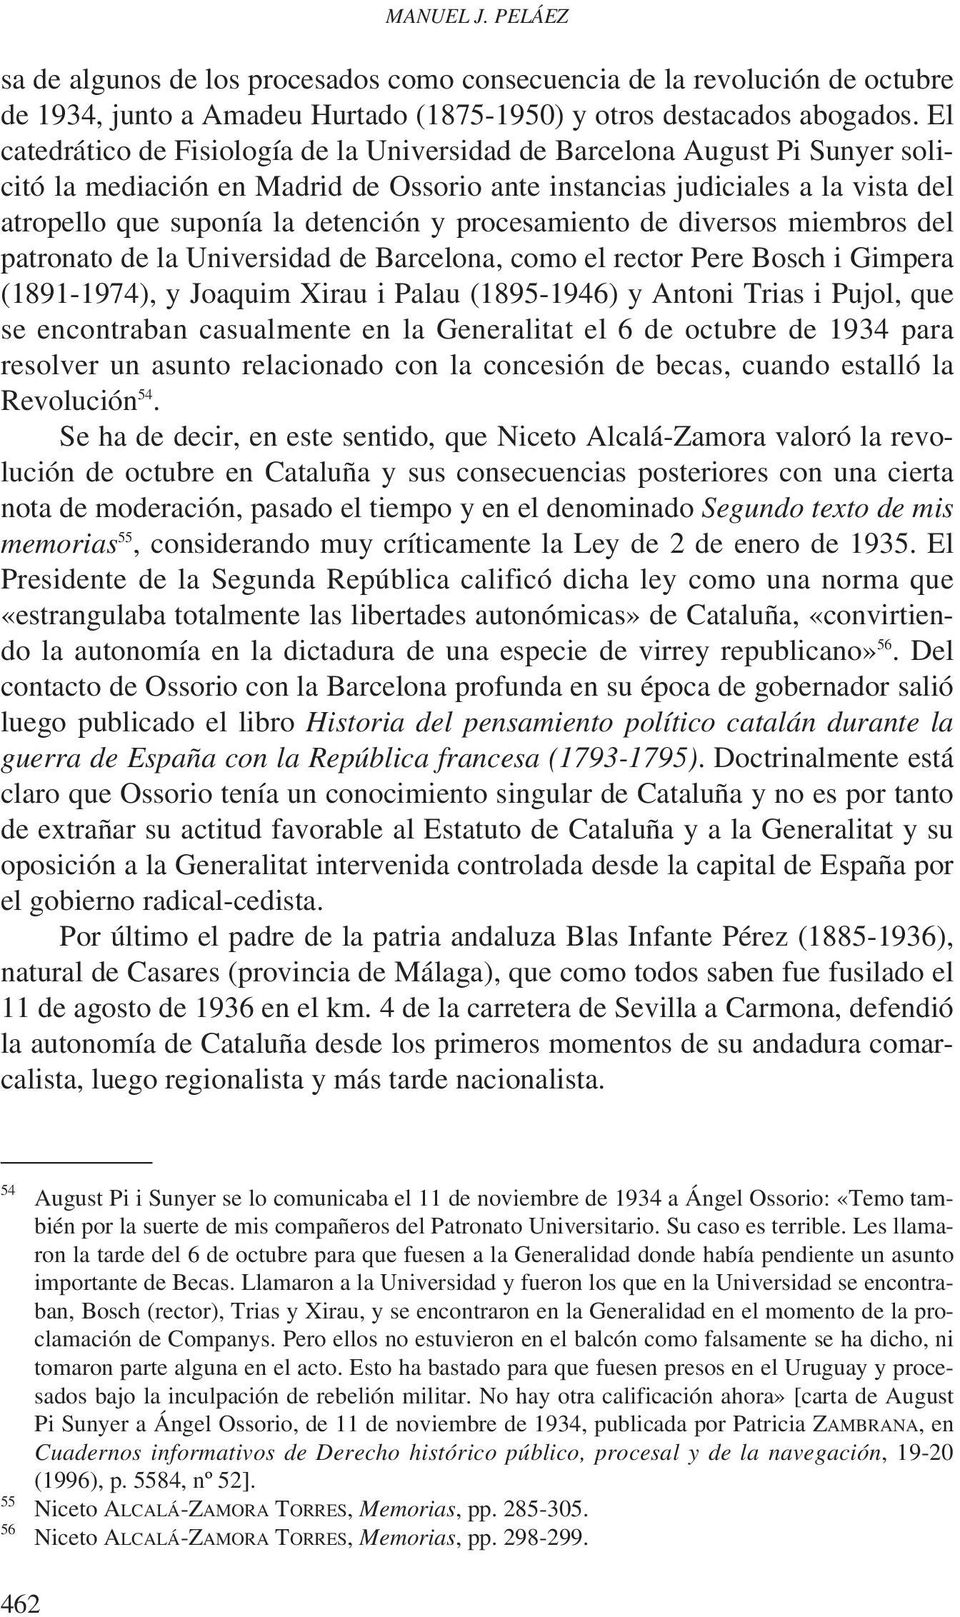 procesamiento de diversos miembros del patronato de la Universidad de Barcelona, como el rector Pere Bosch i Gimpera (1891-1974), y Joaquim Xirau i Palau (1895-1946) y Antoni Trias i Pujol, que se